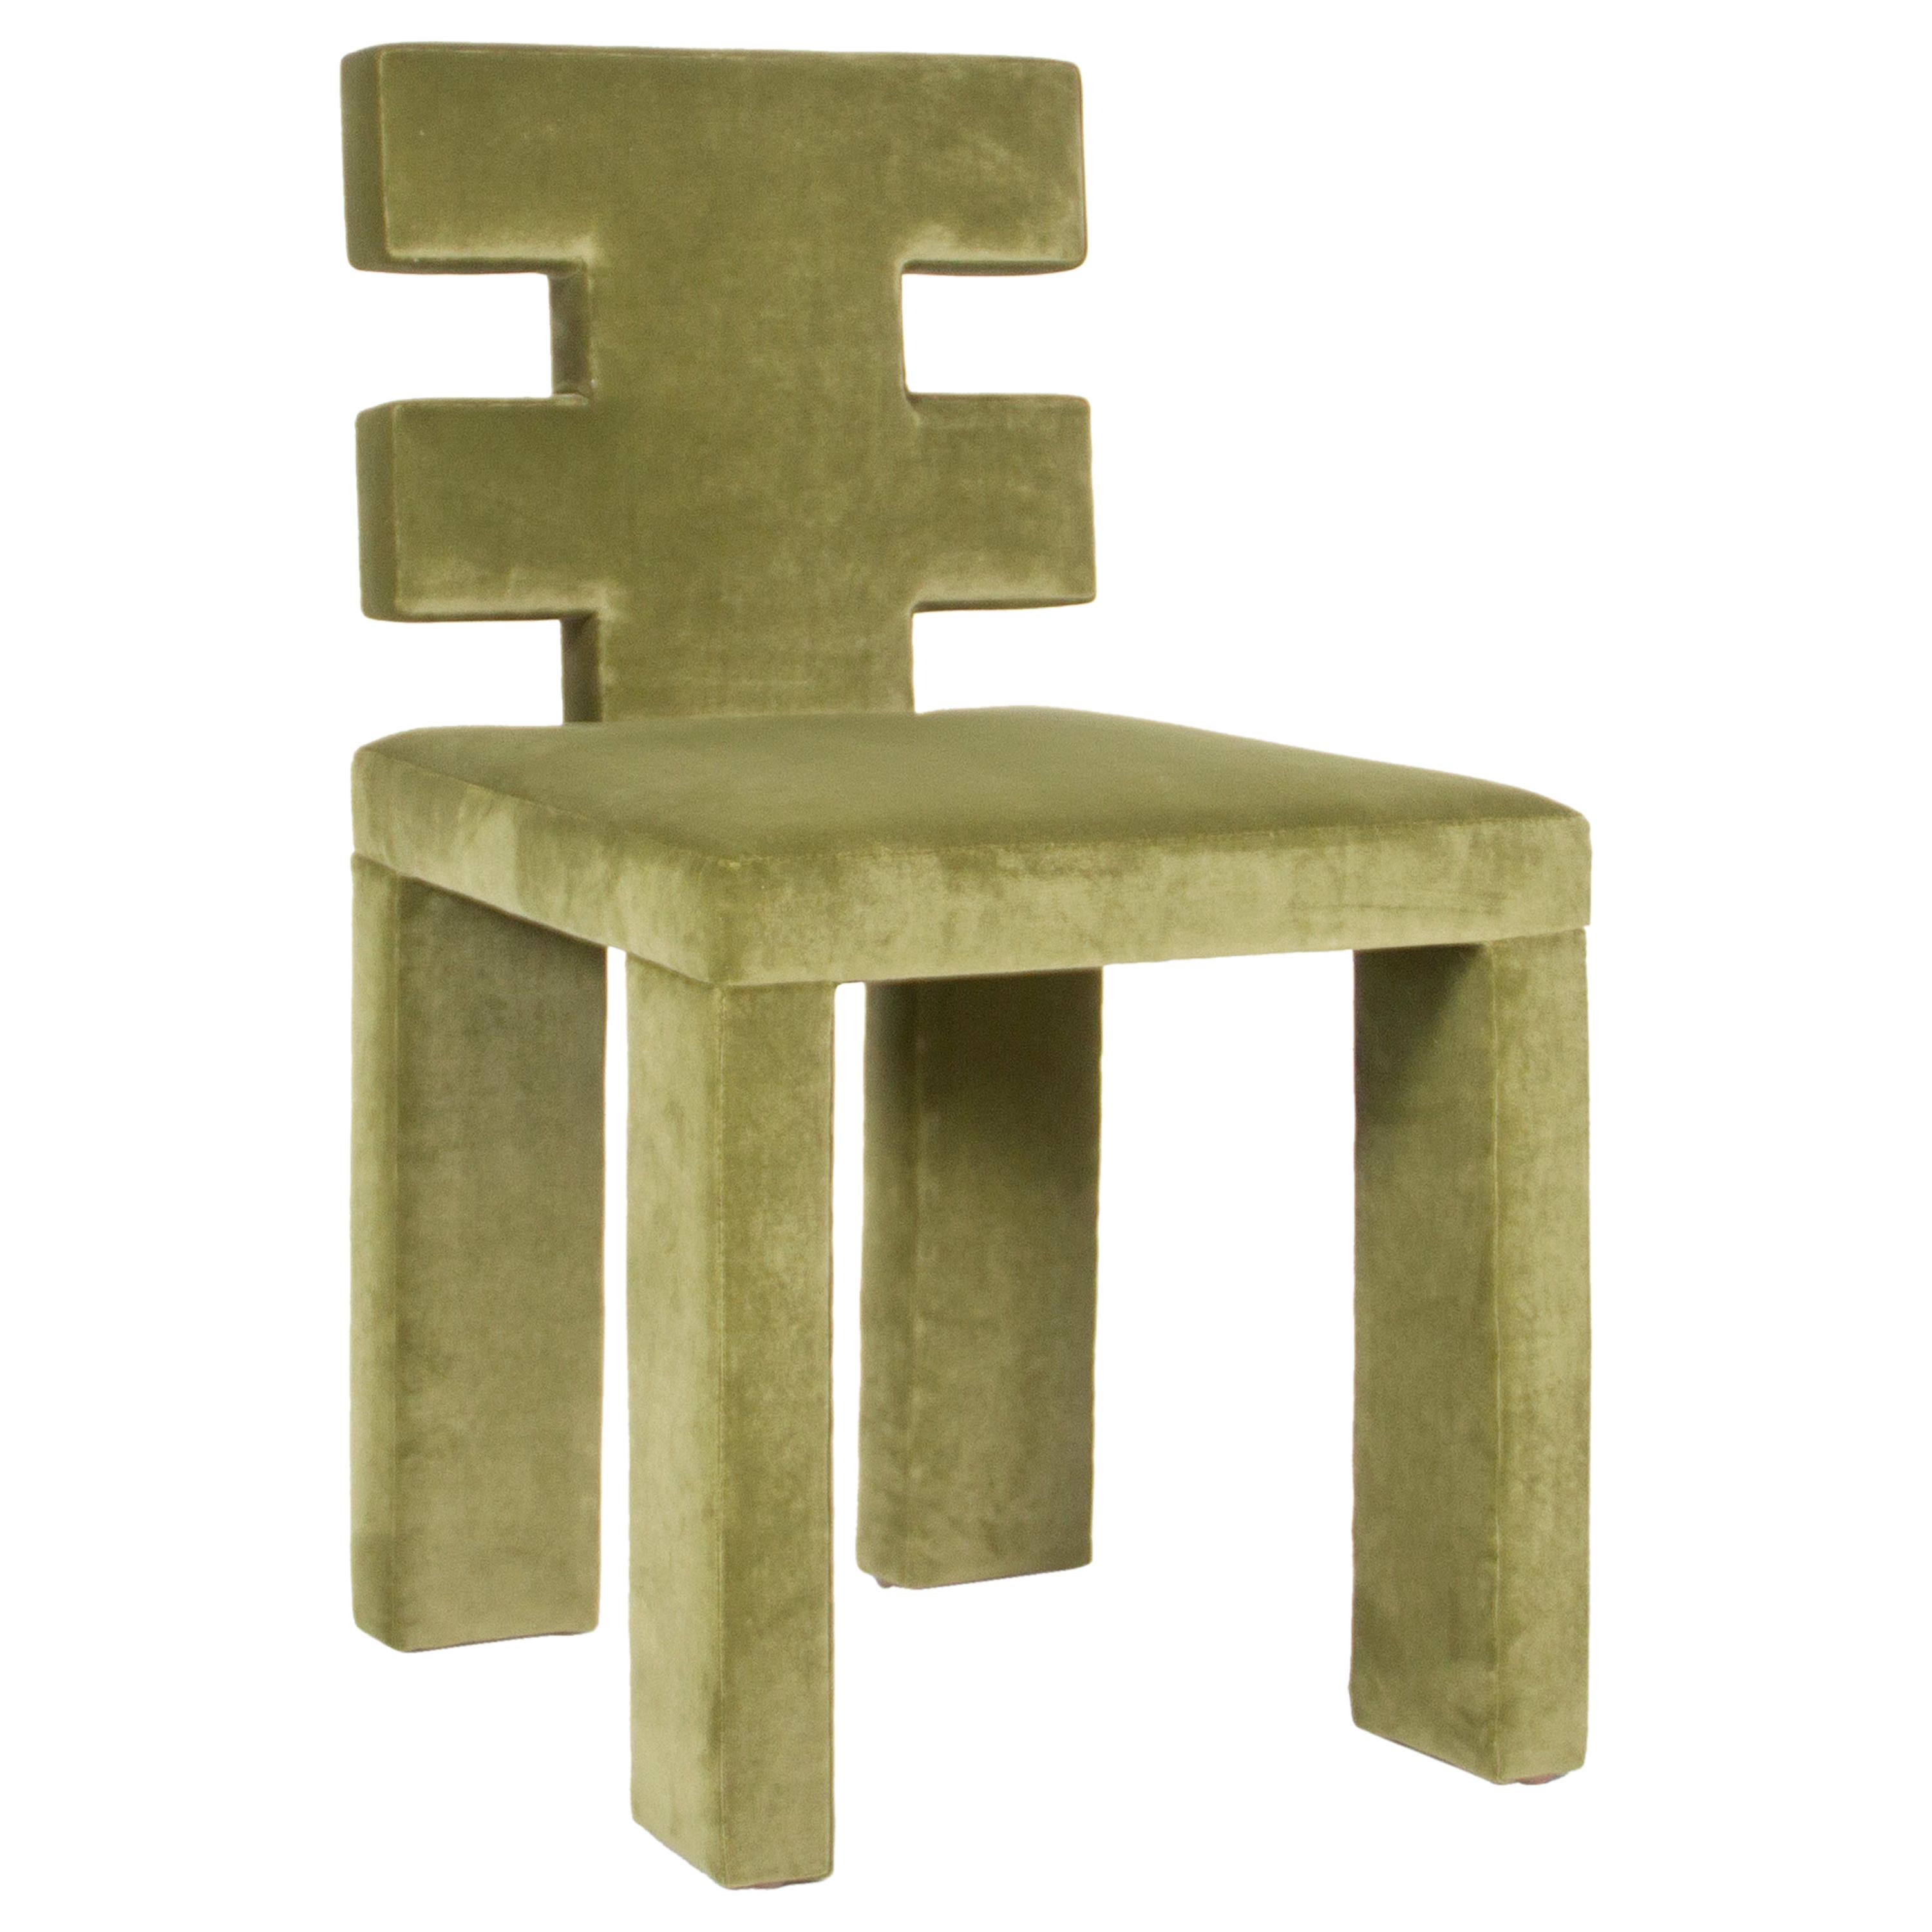 H Dining Chair in Maharam Velvet Upholstery by Estudio Persona